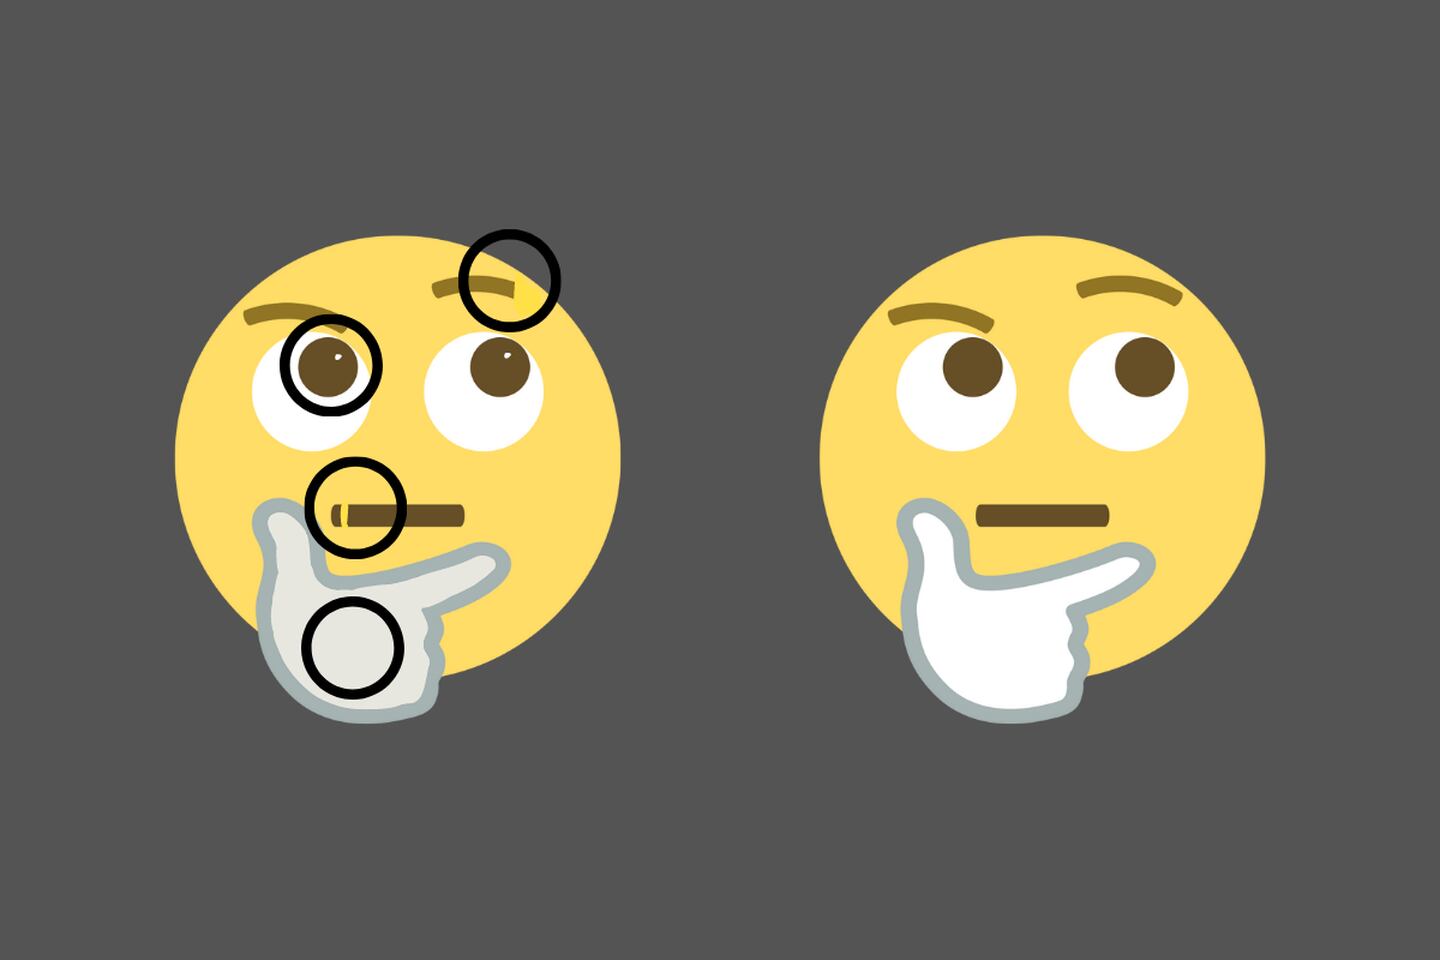 dos emojis que parecen iguales, pero tienen 4 diferencias.